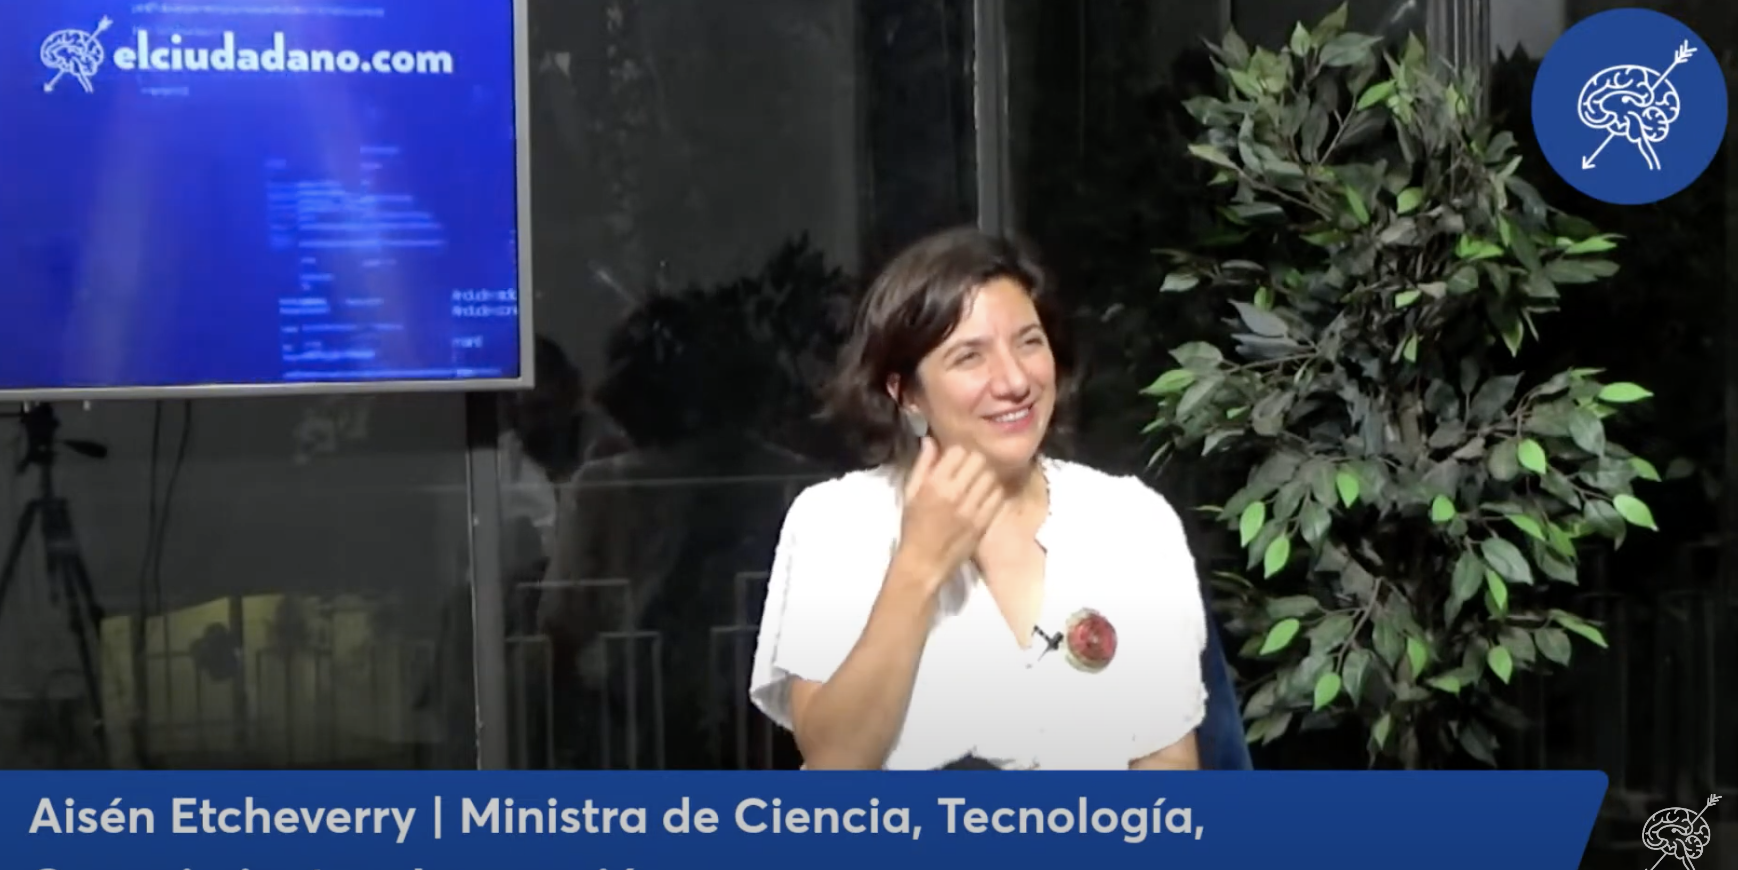 Aisén Etcheverry, Ministra de Ciencia, Tecnología, Conocimiento e Innovación: “Soy usuaria de Chat GPT”